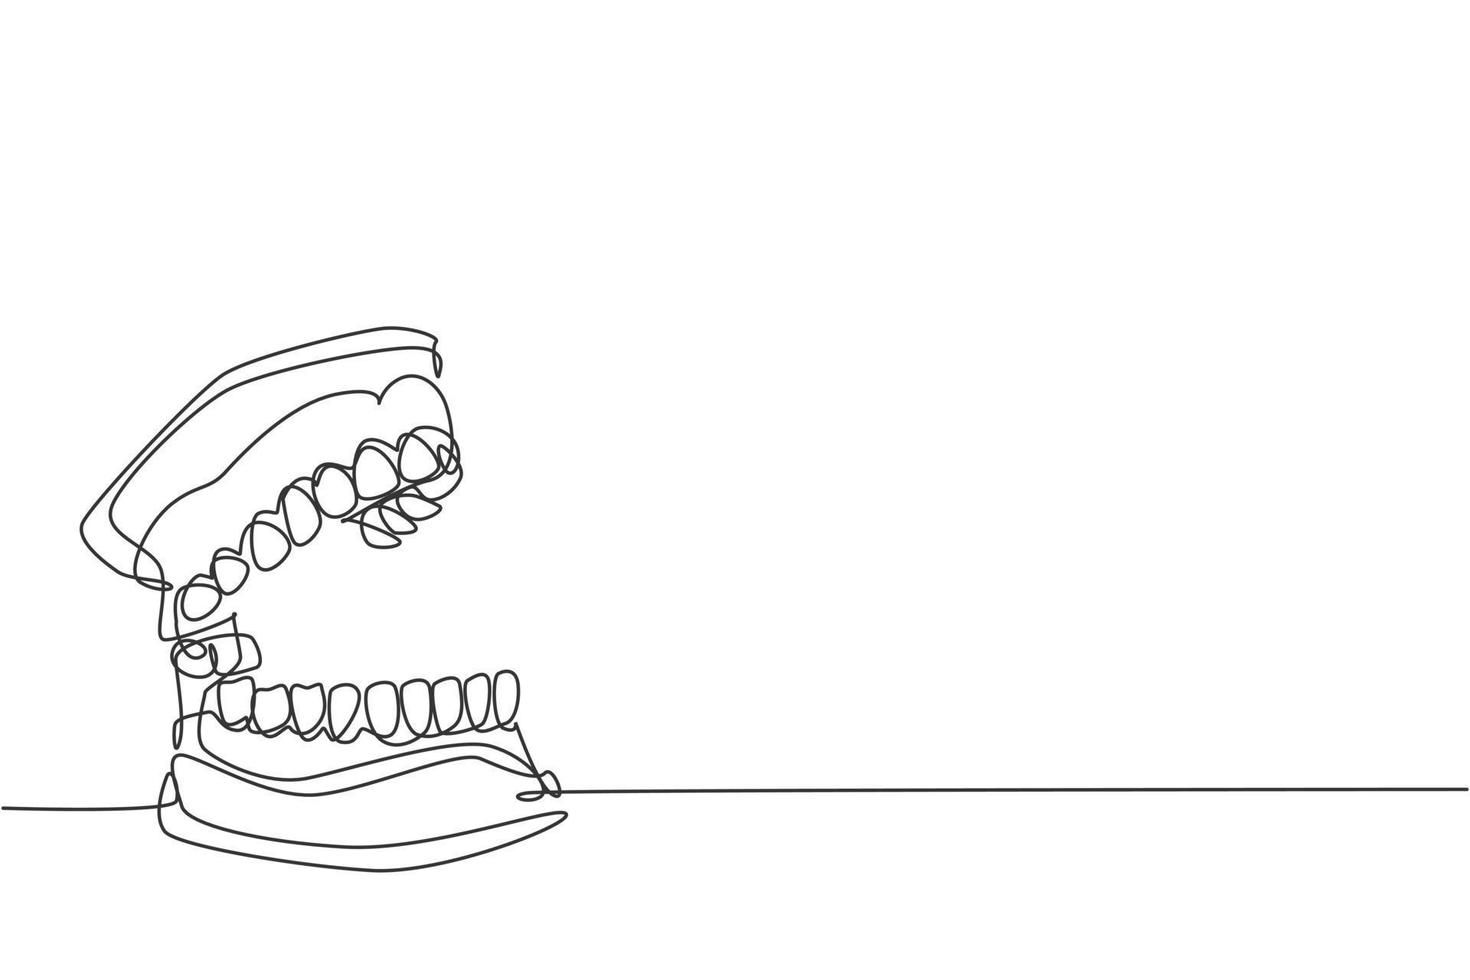 un dibujo de línea continua de dientes humanos adultos anatómicos completos. Concepto de anatomía interna médica moderna ilustración de vector gráfico de diseño de dibujo de línea única